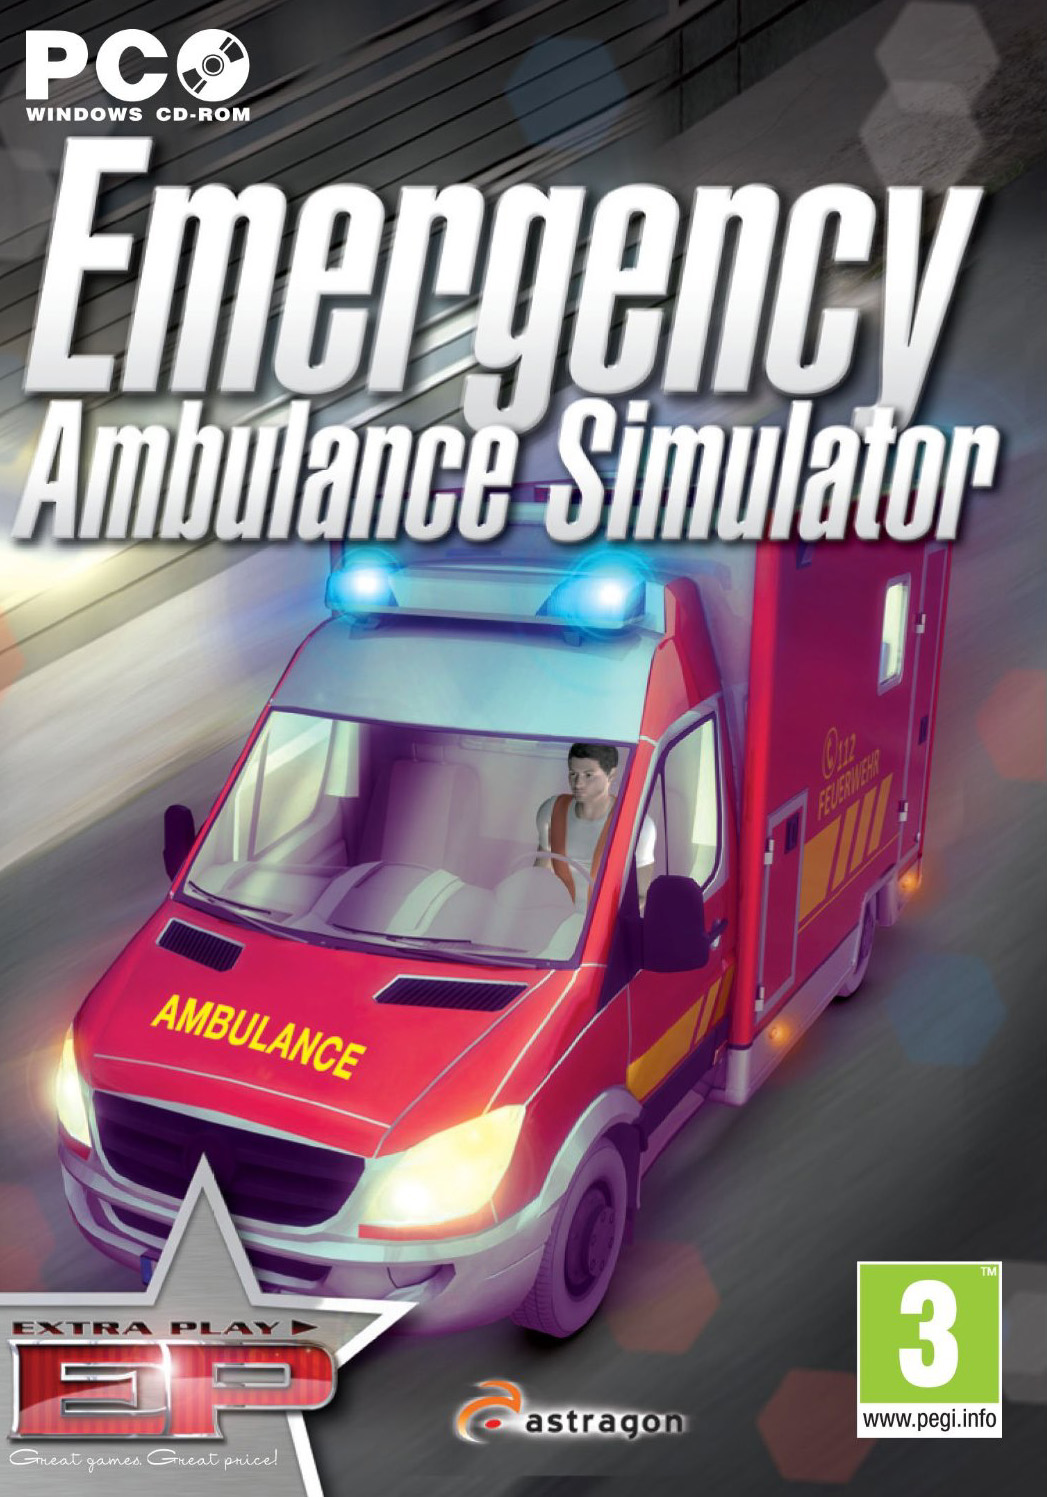 Emergency ambulance simulator 2012 download free pc